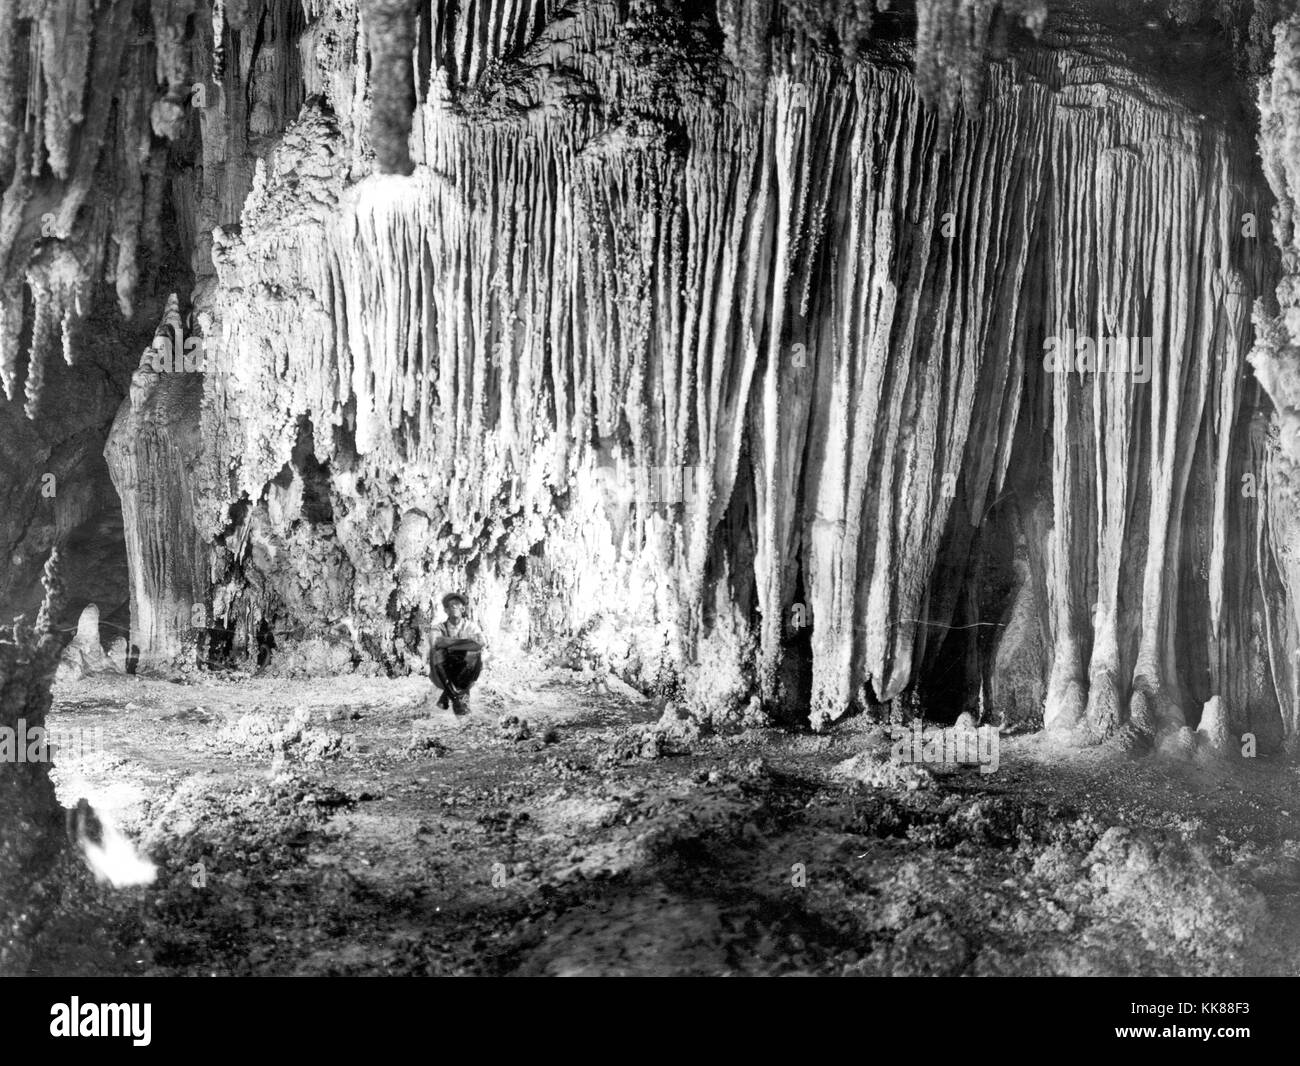 Vue à l'intérieur du Parc National de Carlsbad Caverns, Nouveau-Mexique, montrant un mur dans le chambers connu comme Shinav's Wigwam (de Shinav, une divinité mythique des indiens Navajo). Les stalactites ont grandi ensemble latéralement pour former une masse solide de type rideau. Image courtoisie USGS. 1923. Banque D'Images